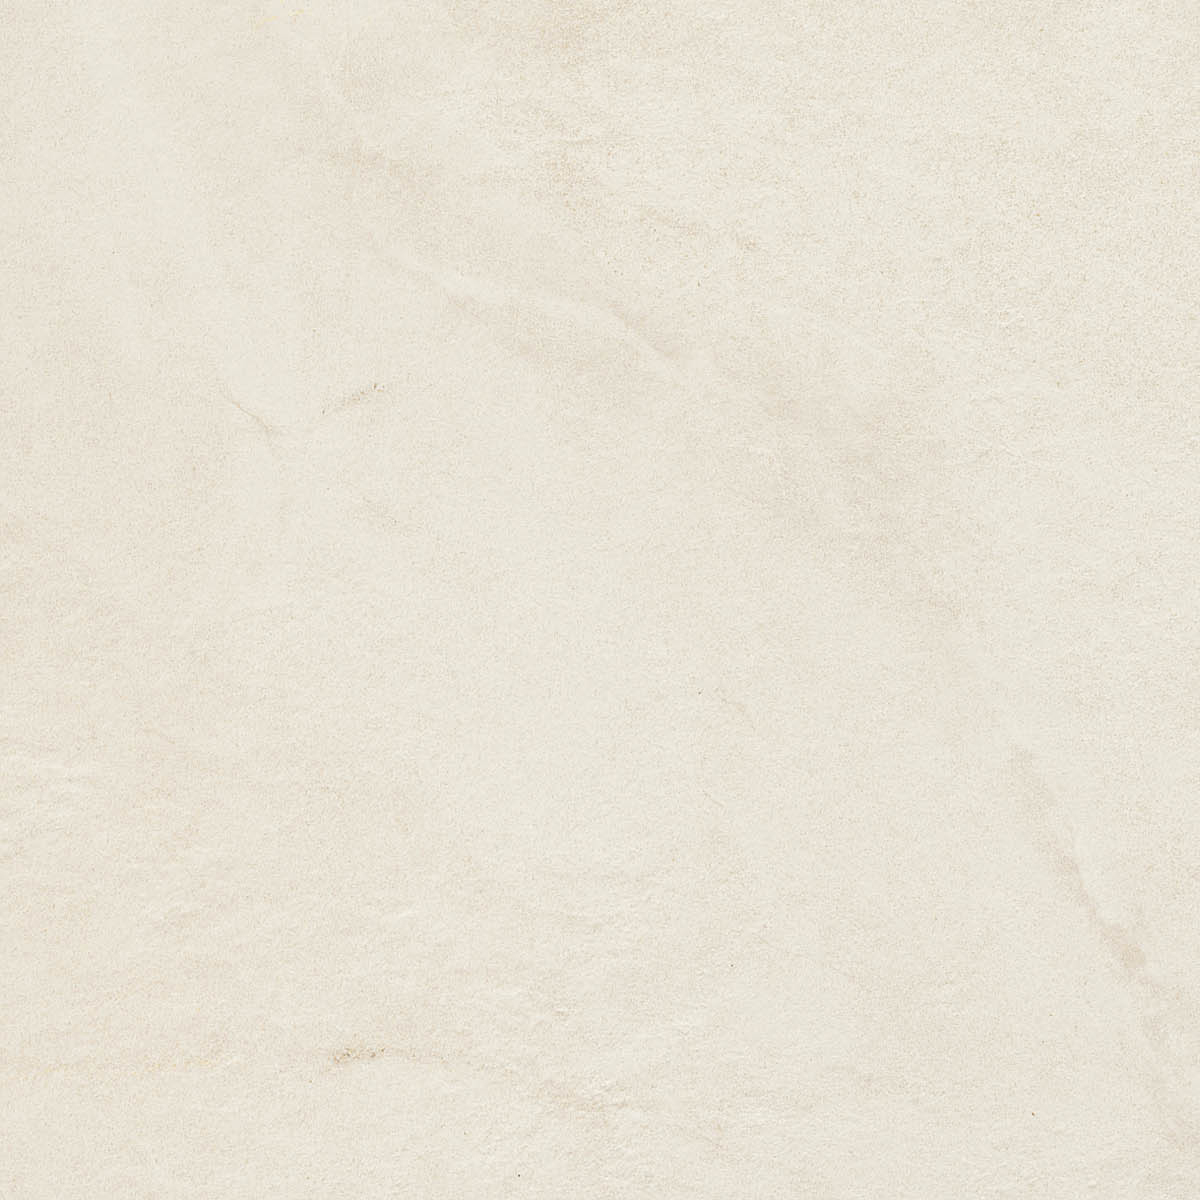 Imola Muse Bianco Patinato Strutturato Satinato 149455 60x60cm rectified 10,5mm - MUSE 60W PT